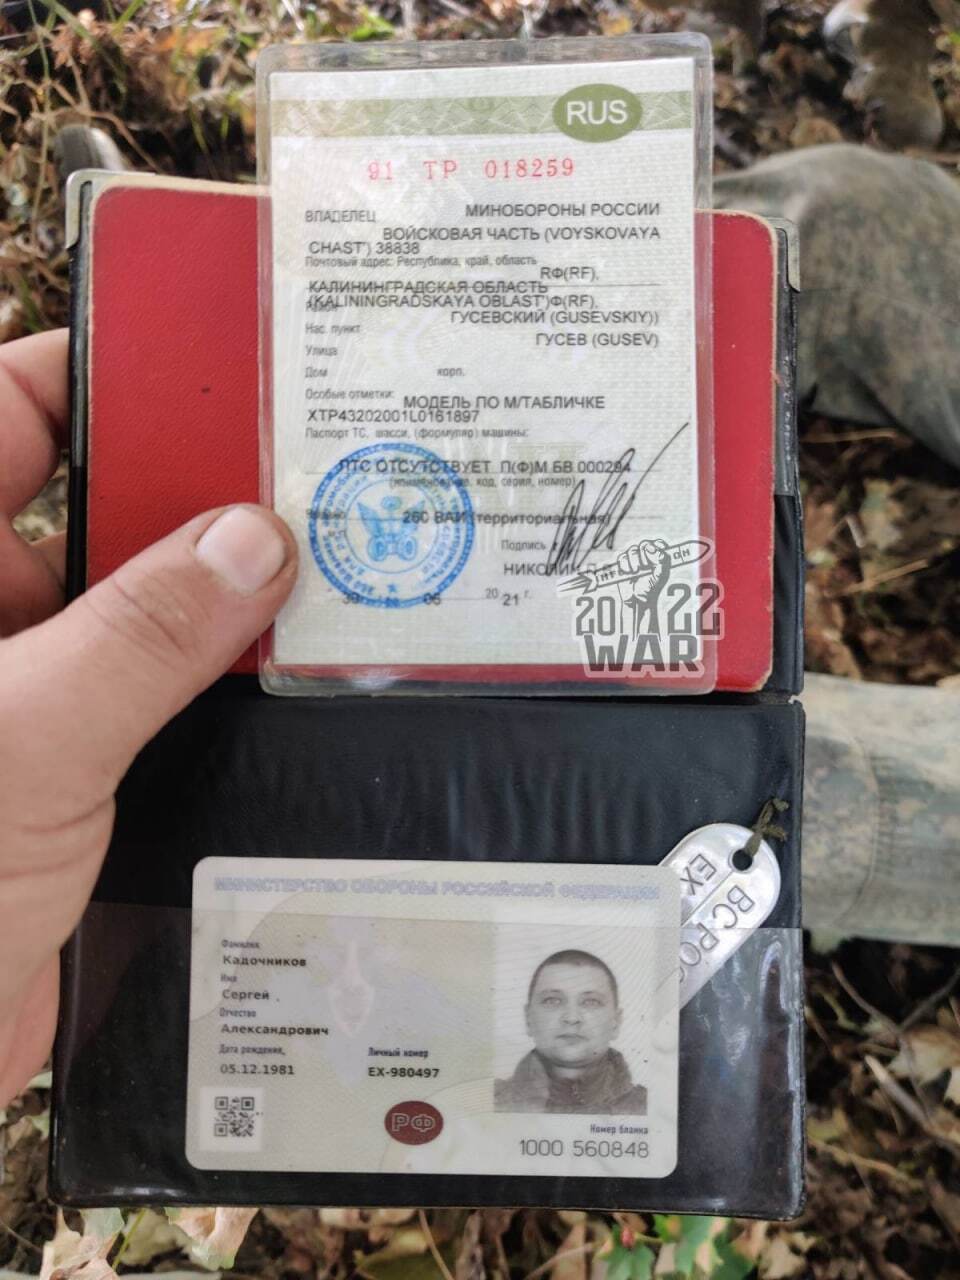 ''Як гриби після дощу'': у ЗСУ заявили, що російські десантники здаються у полон в Україні ''пачками''. Фото 